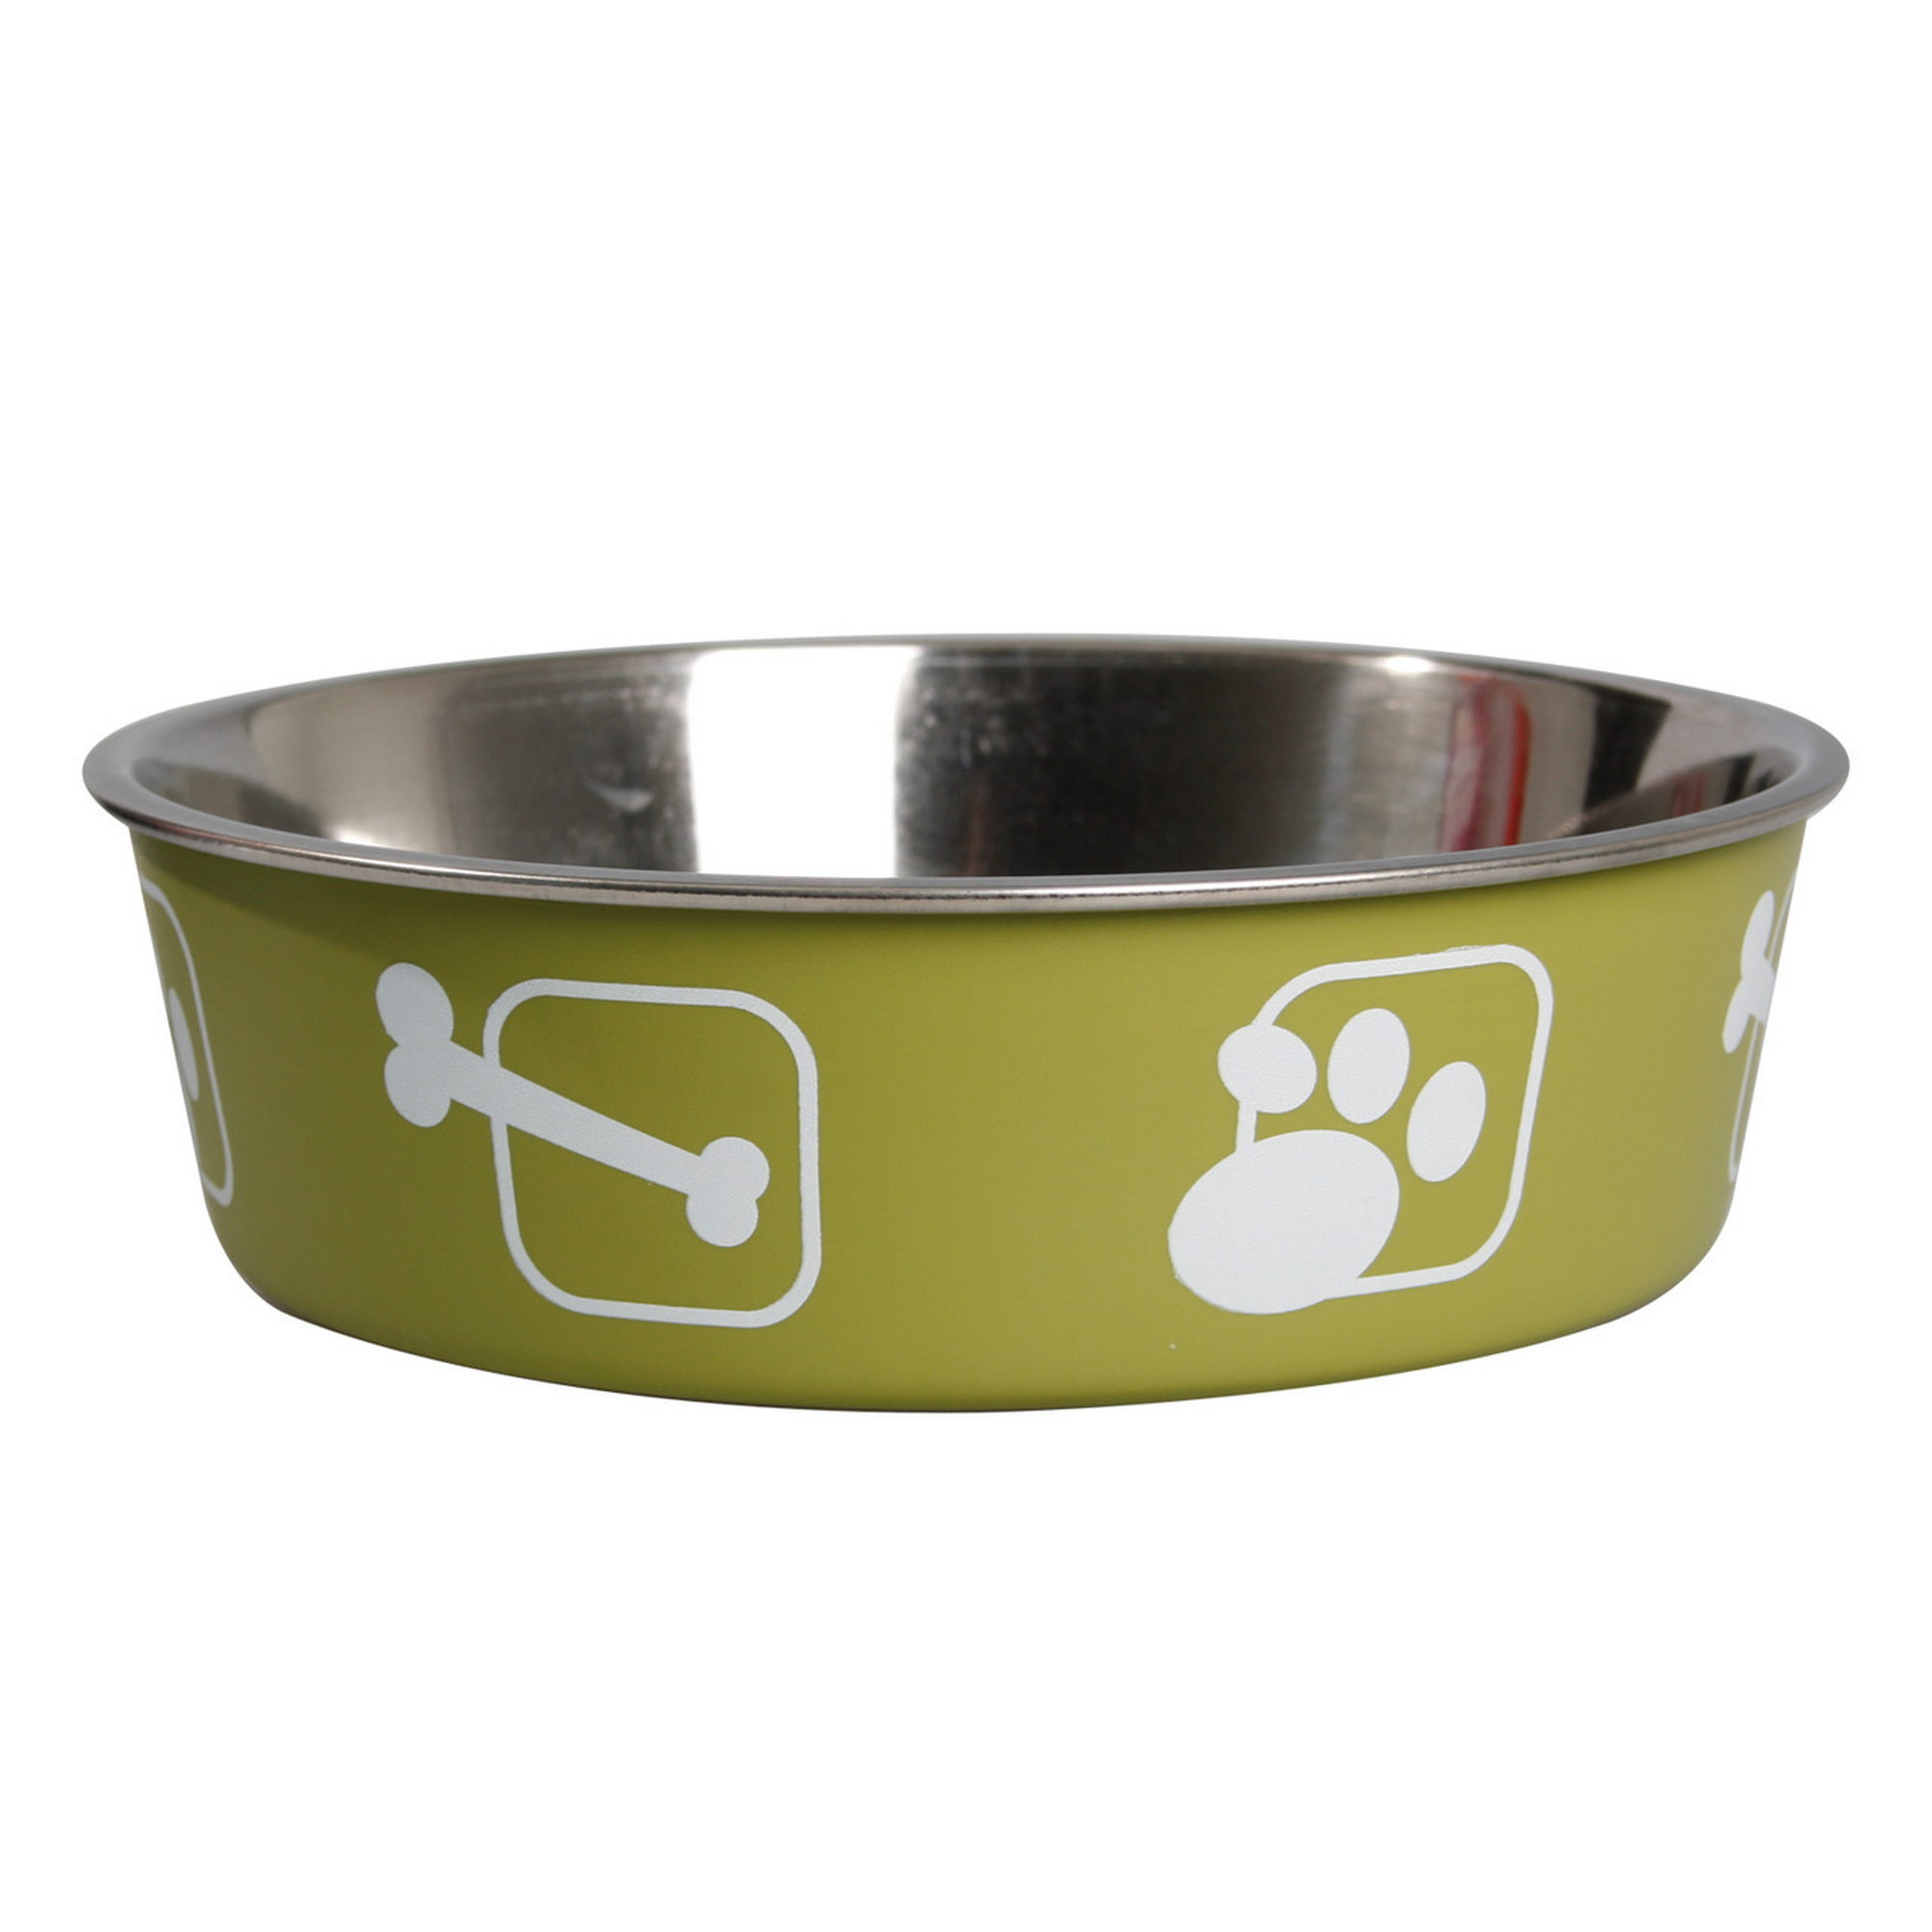 Hundenapf 'Kena' Edelstahl grün mit Knochen- und Pfotenmotiv Ø 14 cm + product picture